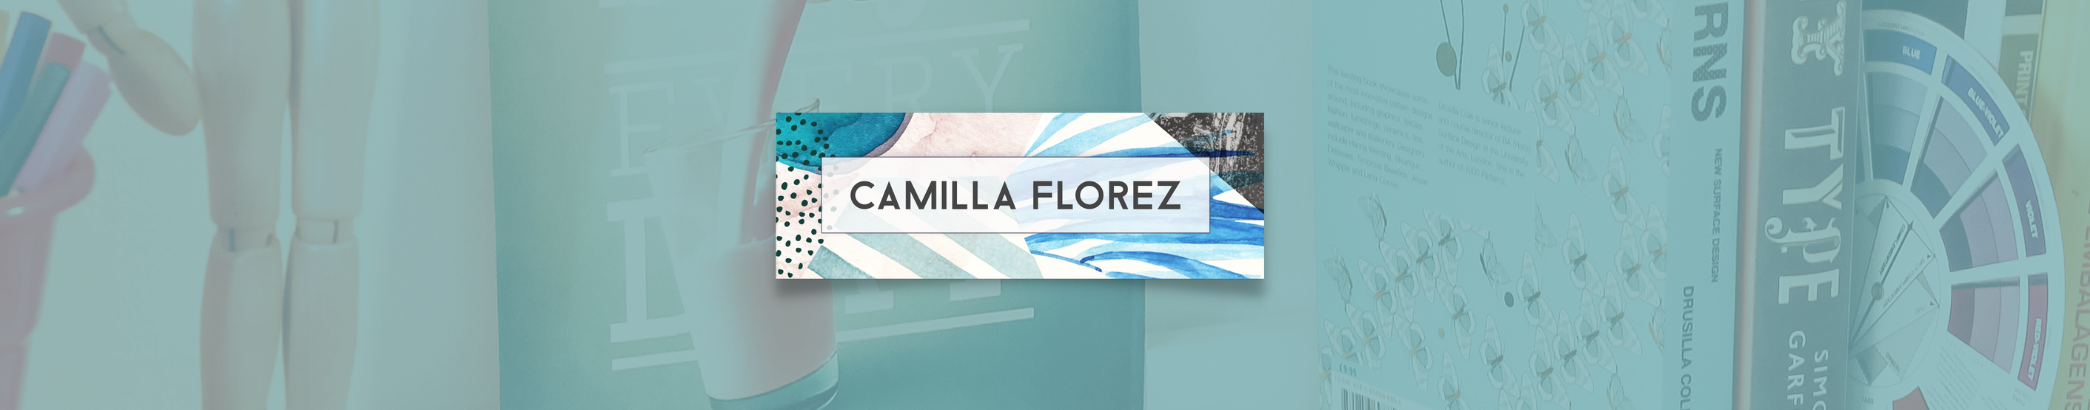 Camilla Florez's profile banner